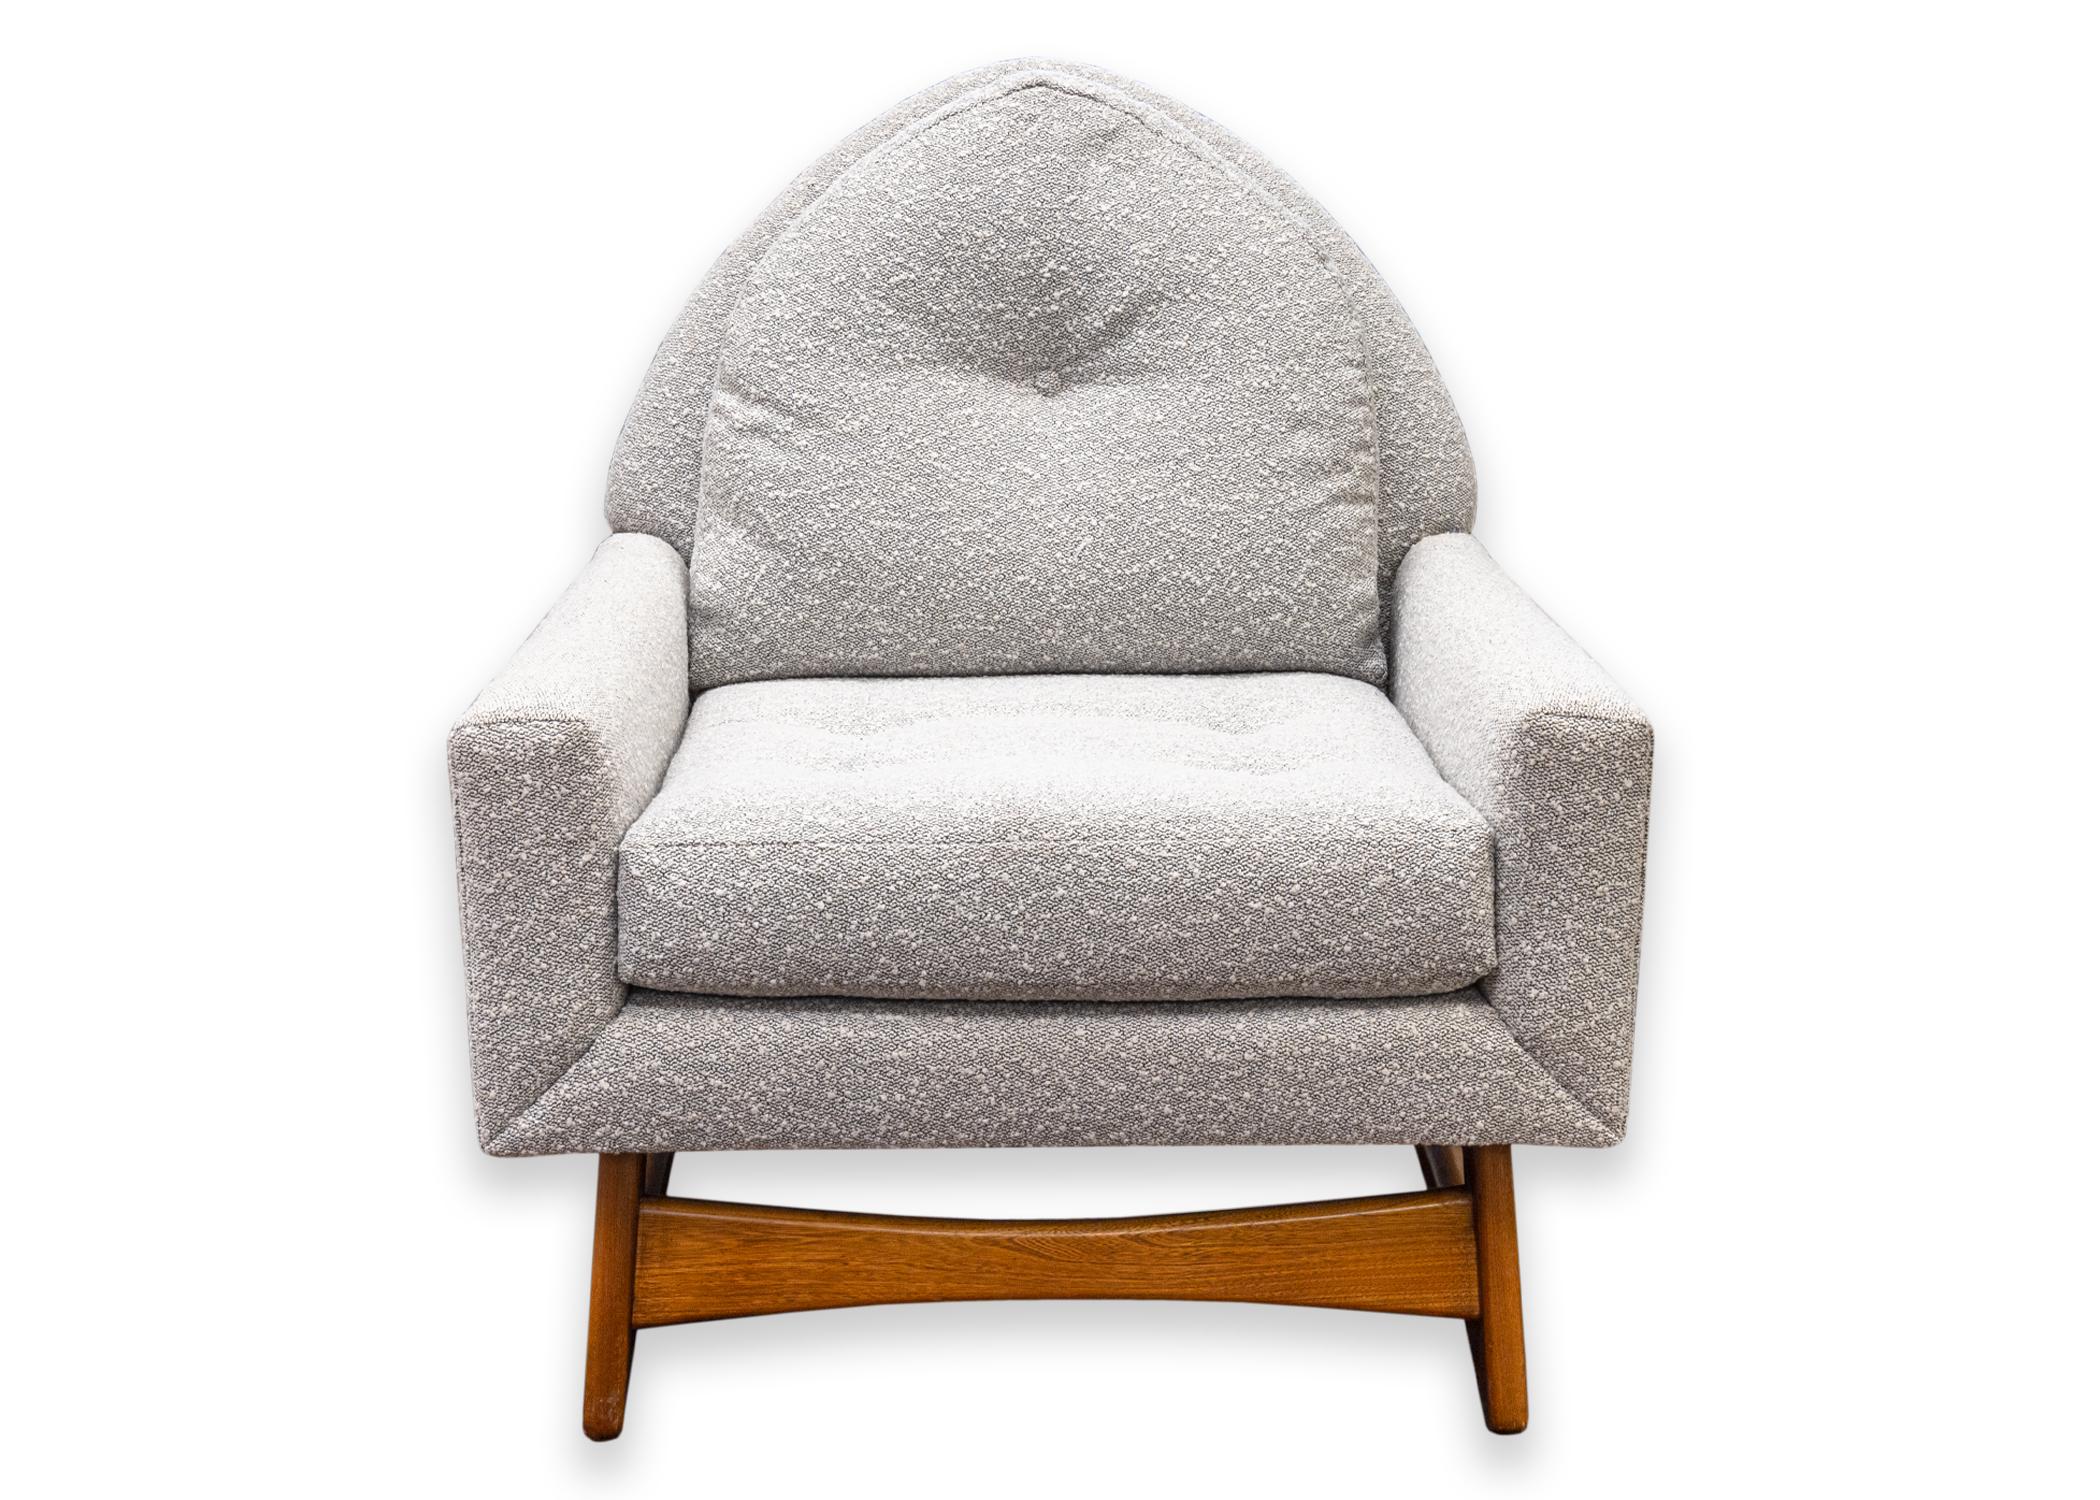 Chaise d'appoint Kroehler de style Adrian Pearsall. Une belle pièce d'accent avec un tissu gris rembourré super confortable, un coussin d'assise amovible et un cadre de base en bois de noyer courbé. Le coussin d'assise et le dossier sont tous deux